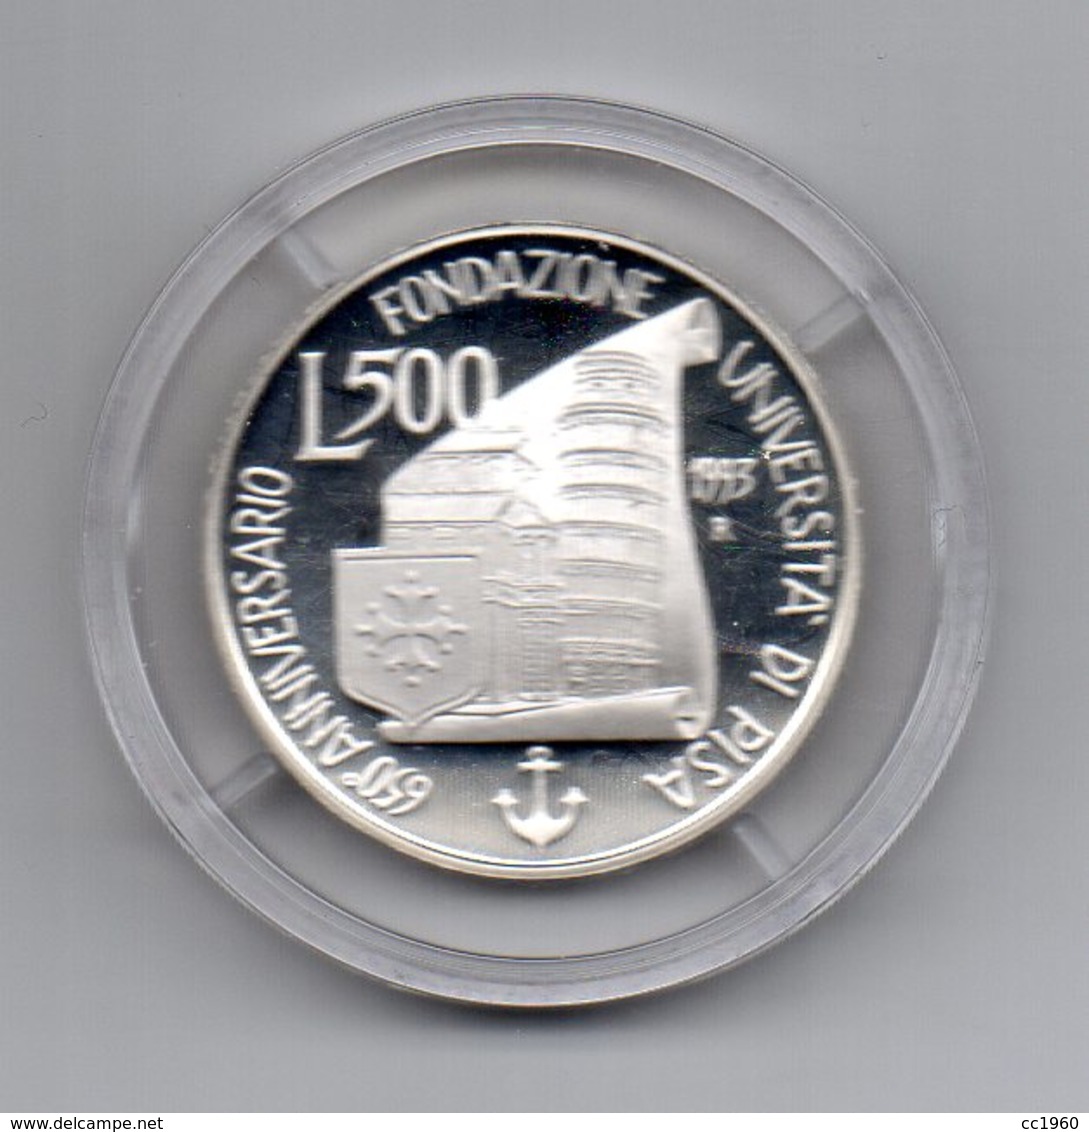 Italia - 1993 - 500 Lire  - PROOF - 650° Anniversario Fondazione Università Di Pisa - Argento 835 - In Capsula- (MW2152) - 500 Lire